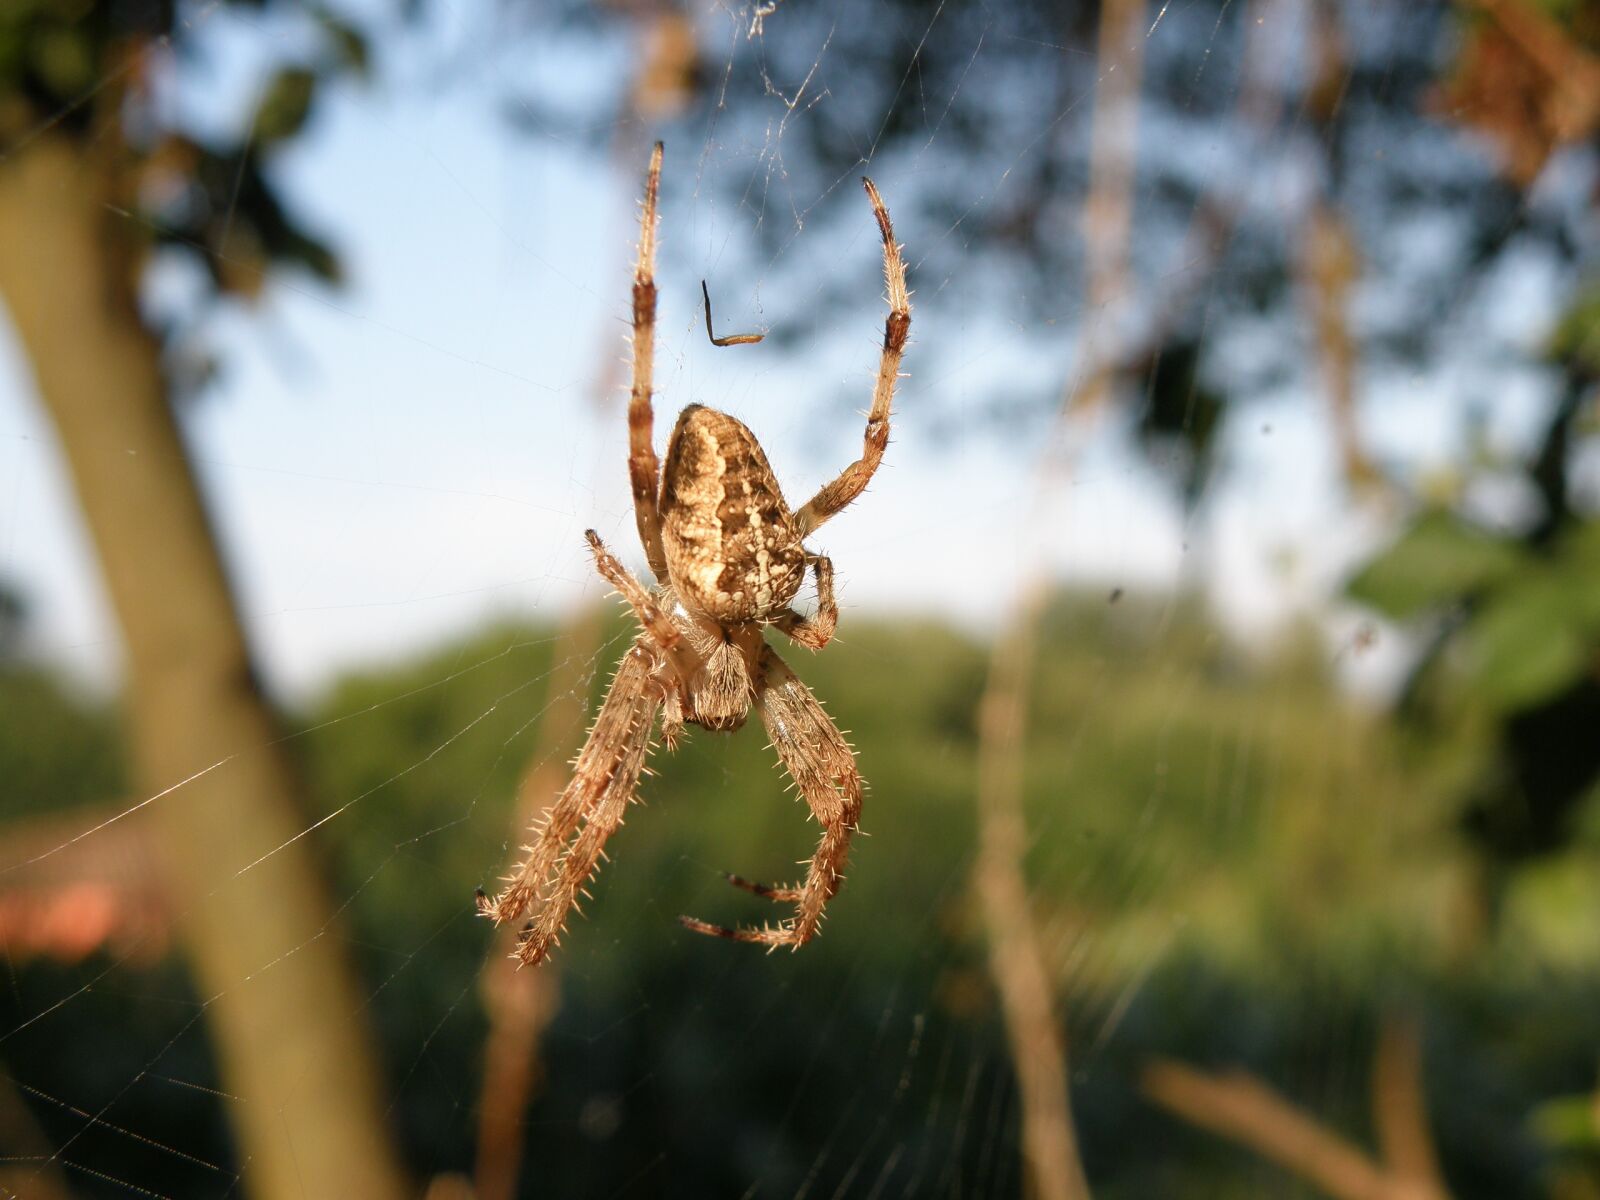 Olympus SP570UZ sample photo. Spider, nature, arachnid photography